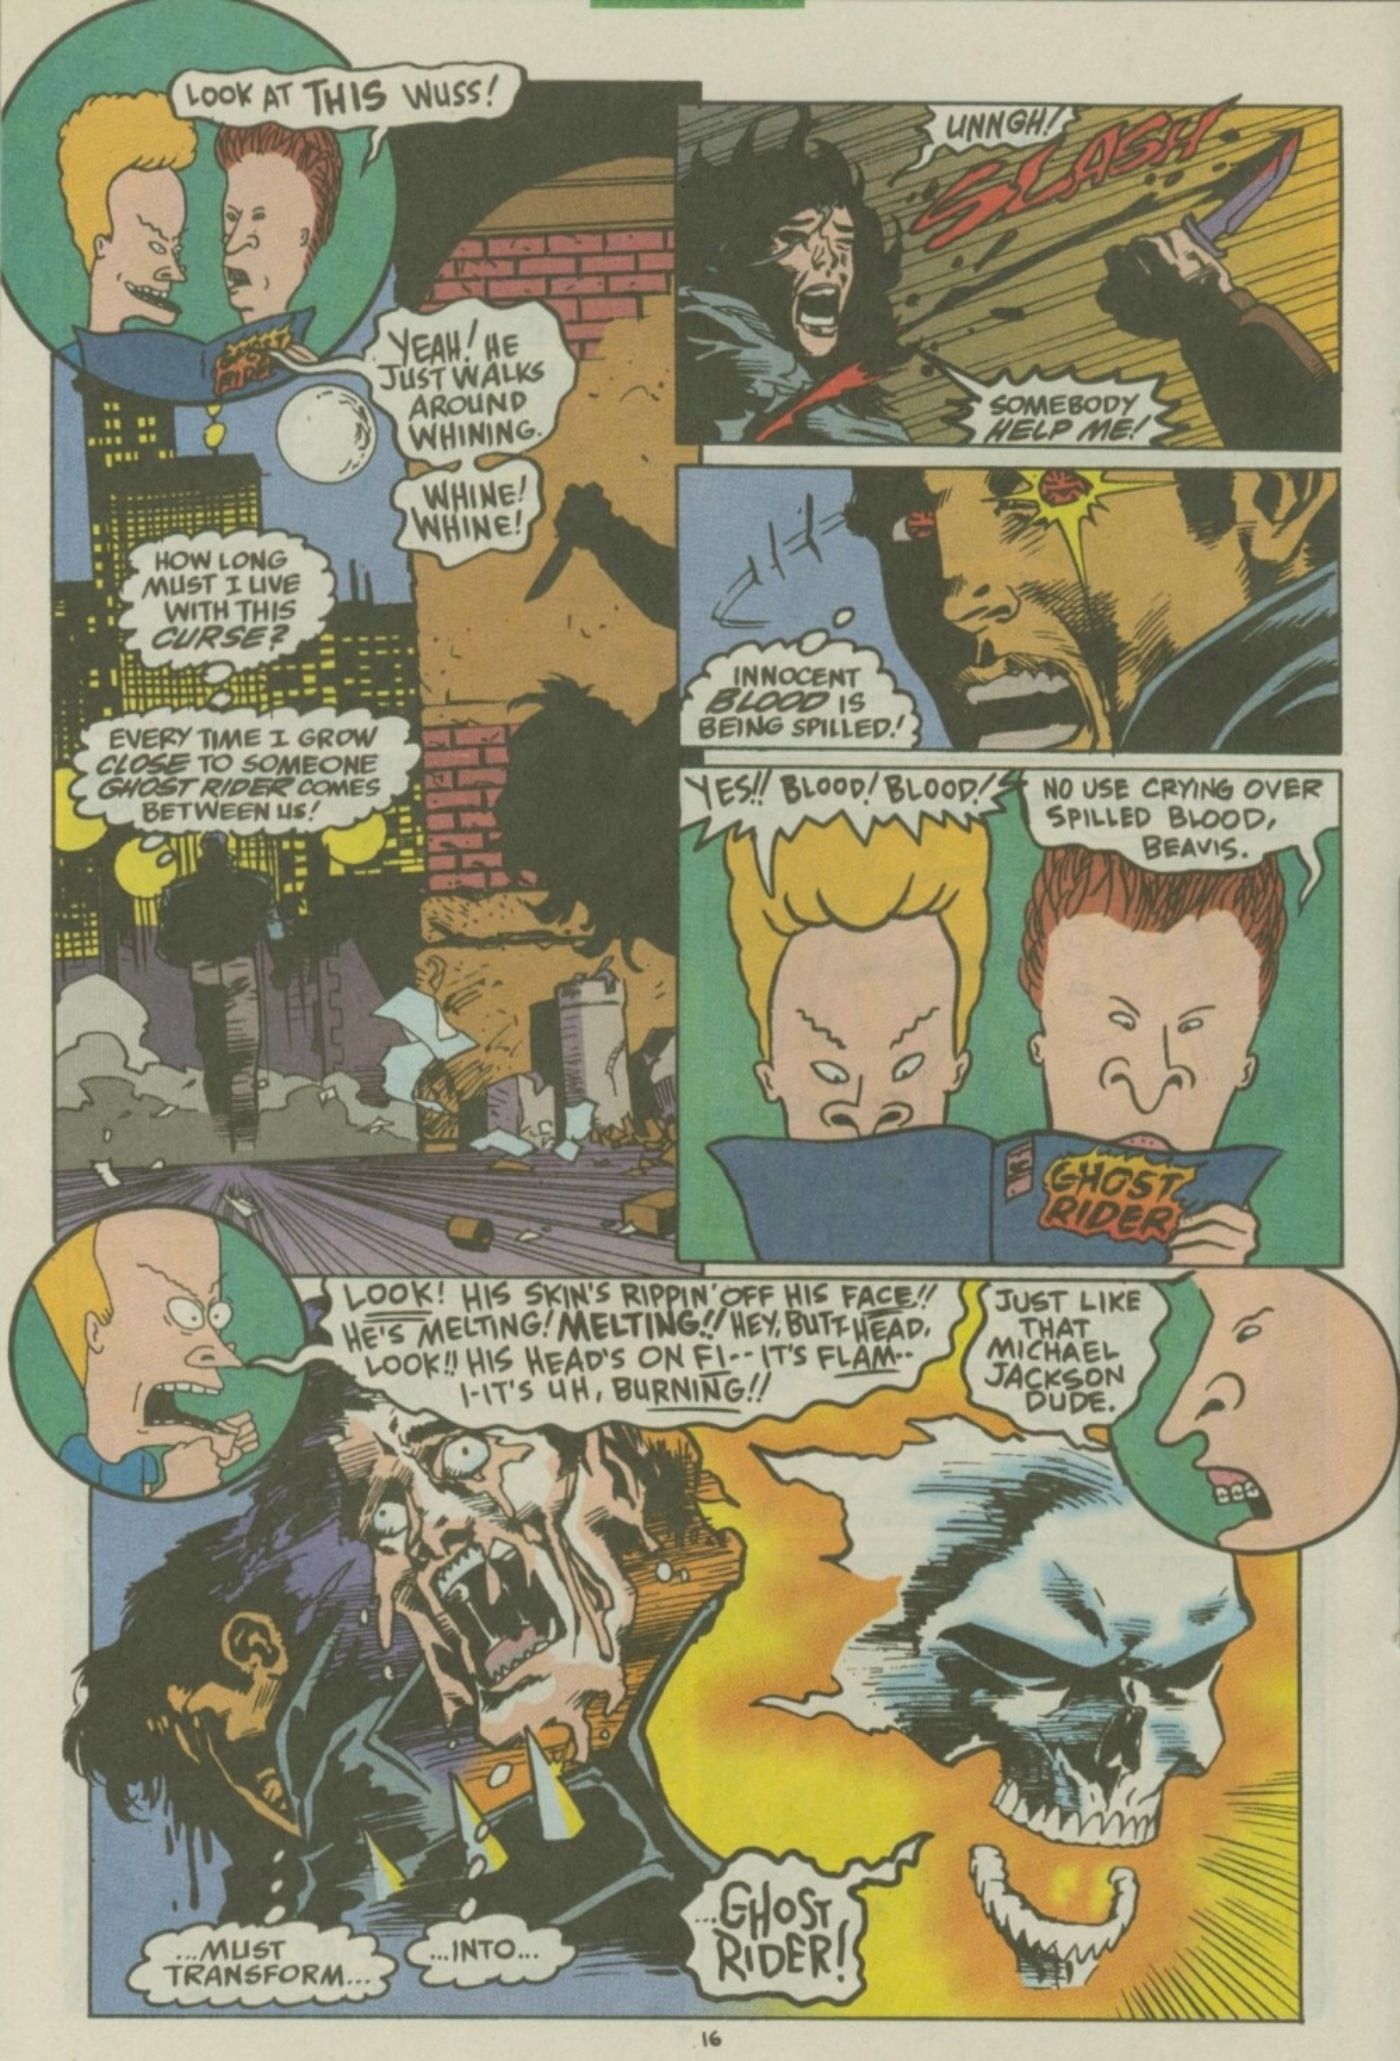 Beavis e Butt-Head ficam entusiasmados ao ler uma história em quadrinhos do Ghost Rider.